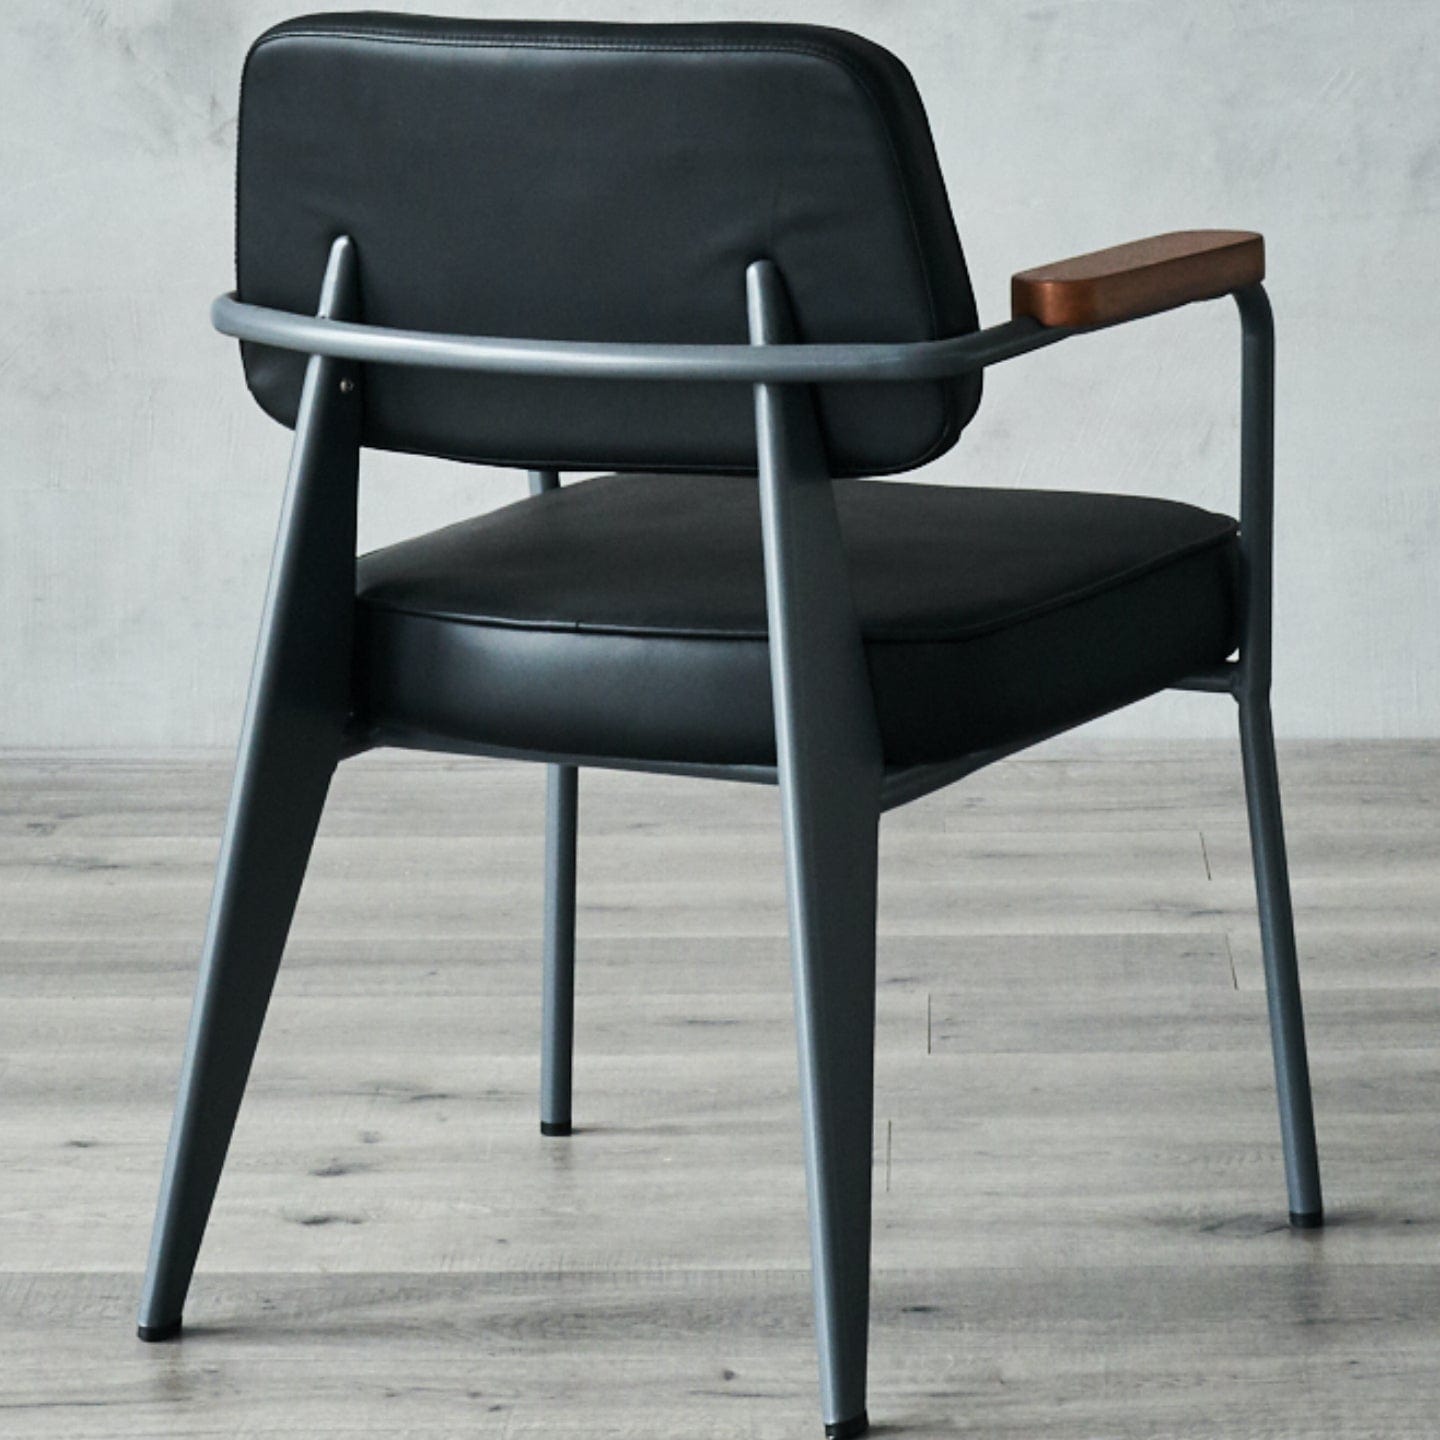 Soho Concept prouve-fauteuil-noir-base-metal-assise-simili-cuir-chaise-de-salle-a-manger-noir